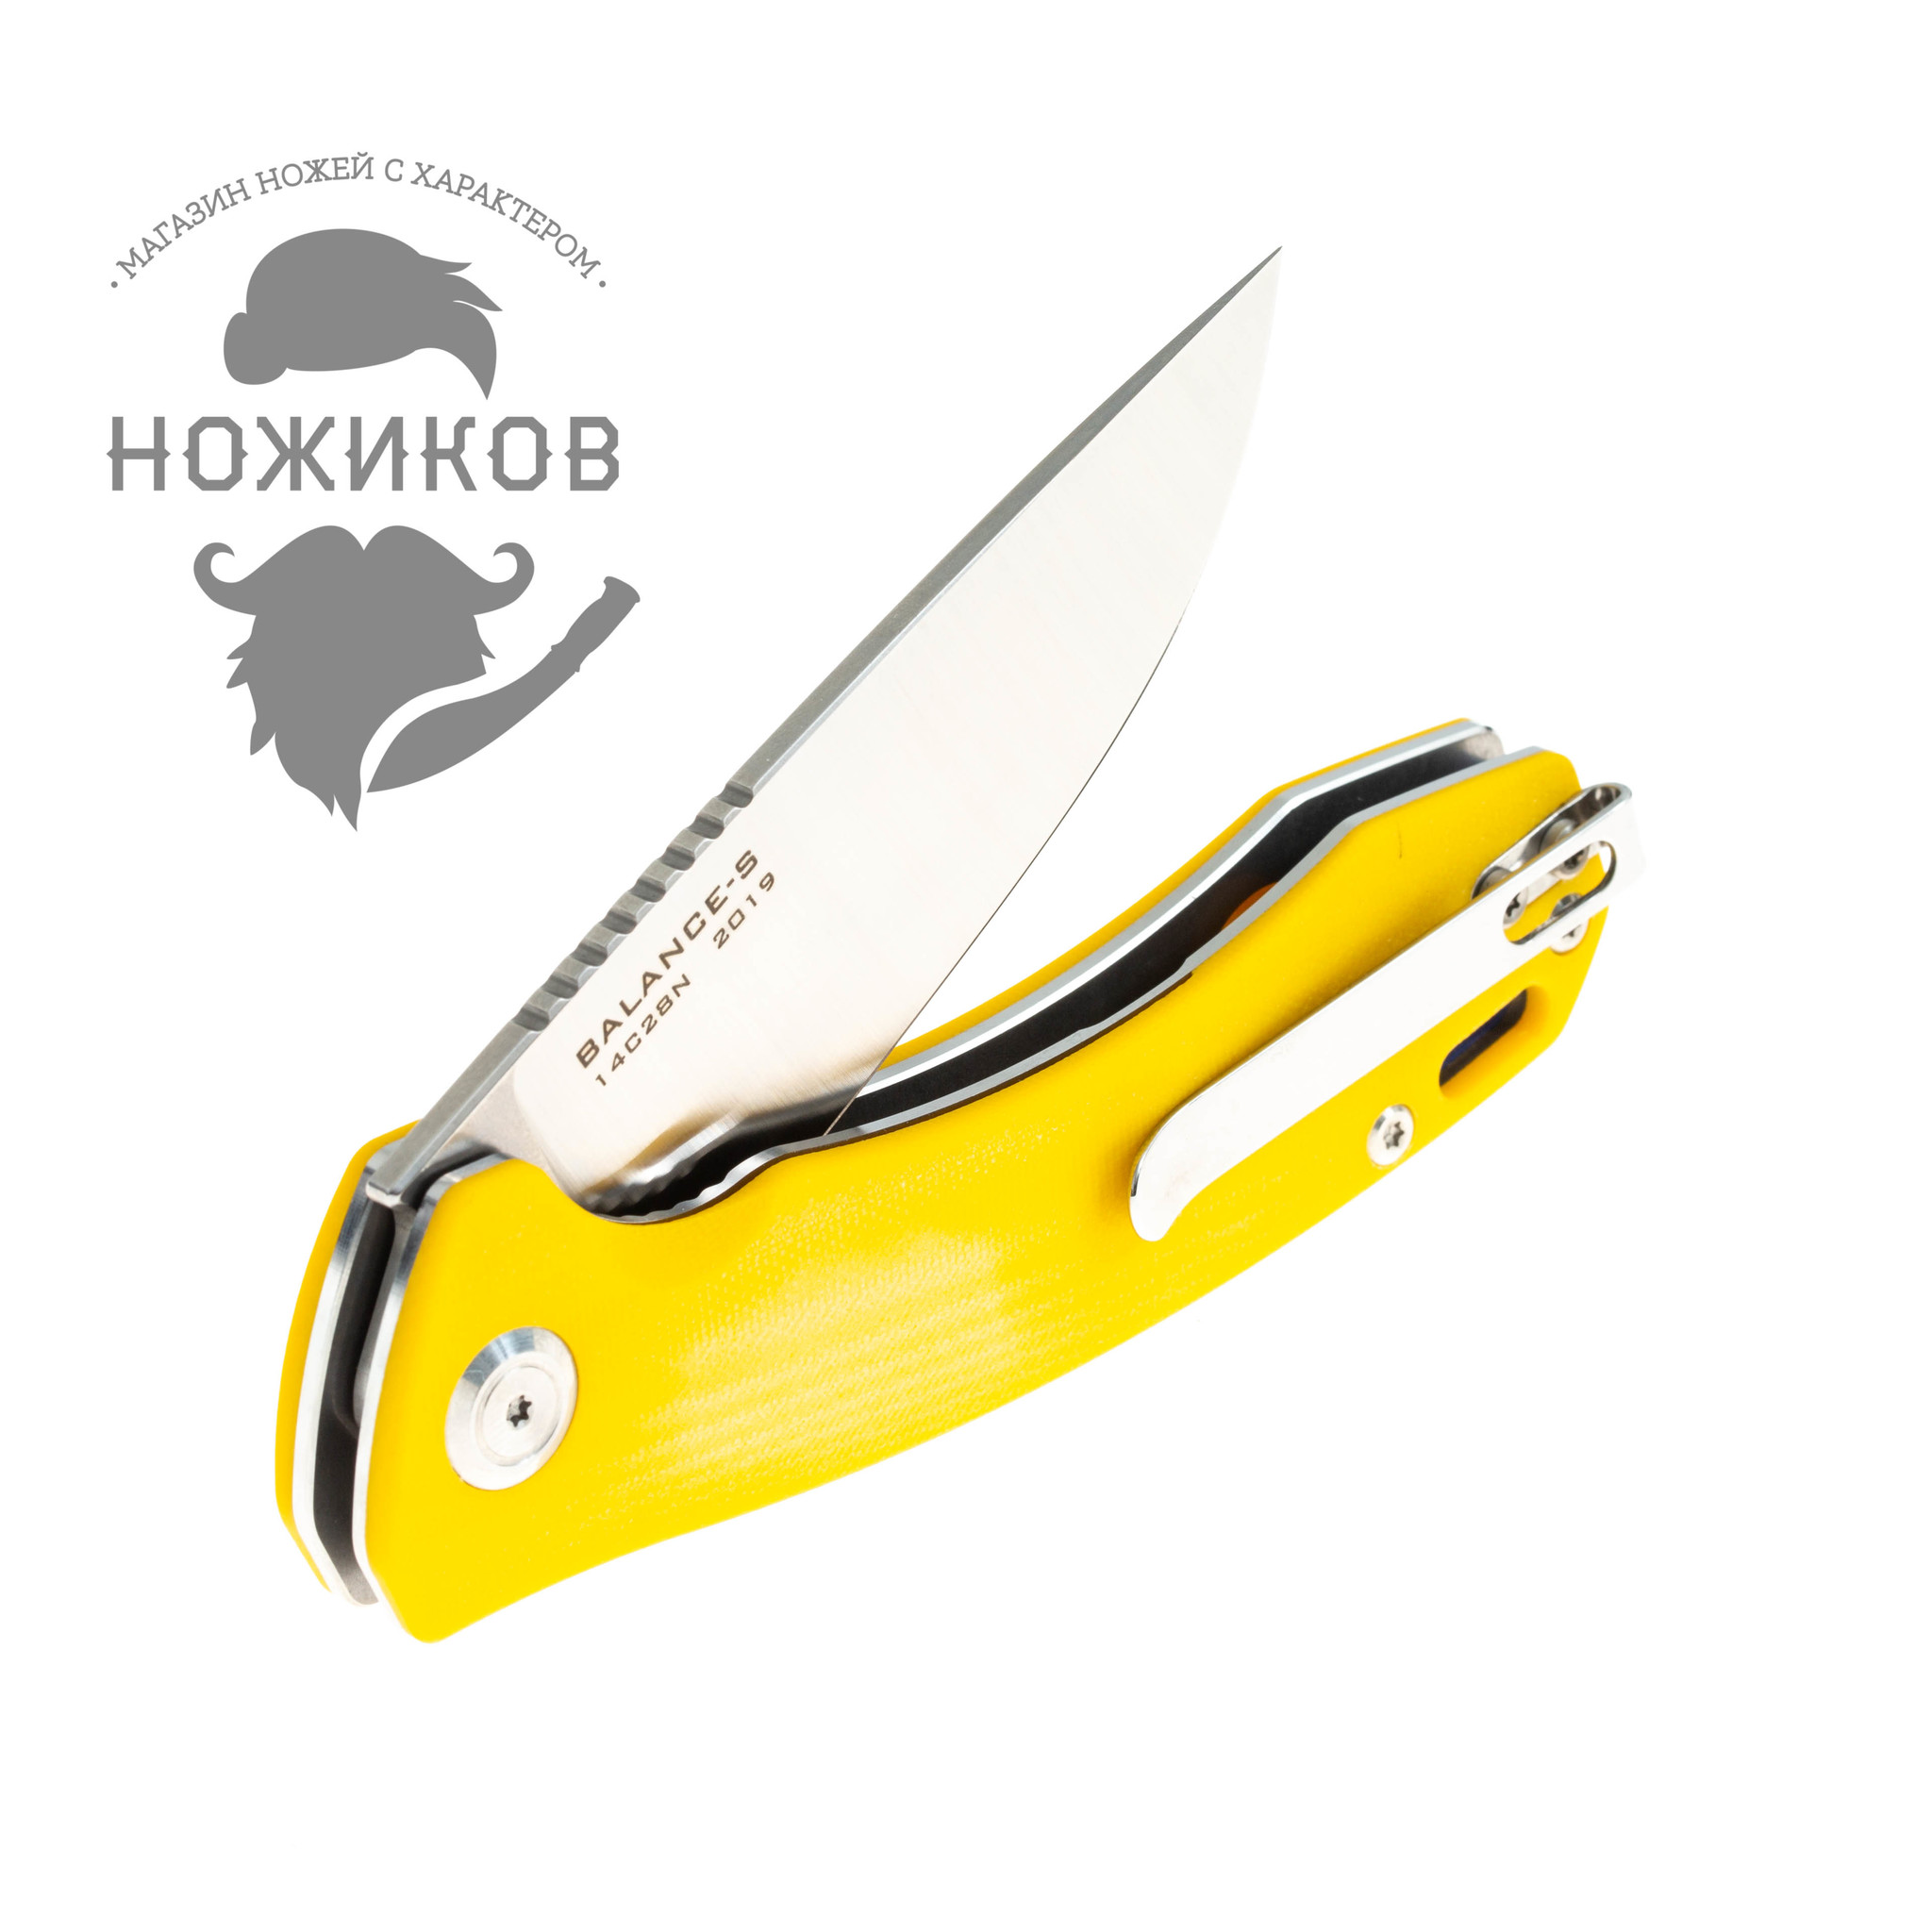 Складной нож Maxace Balance-S 2019 cталь 14C28N цвет желтый от Ножиков